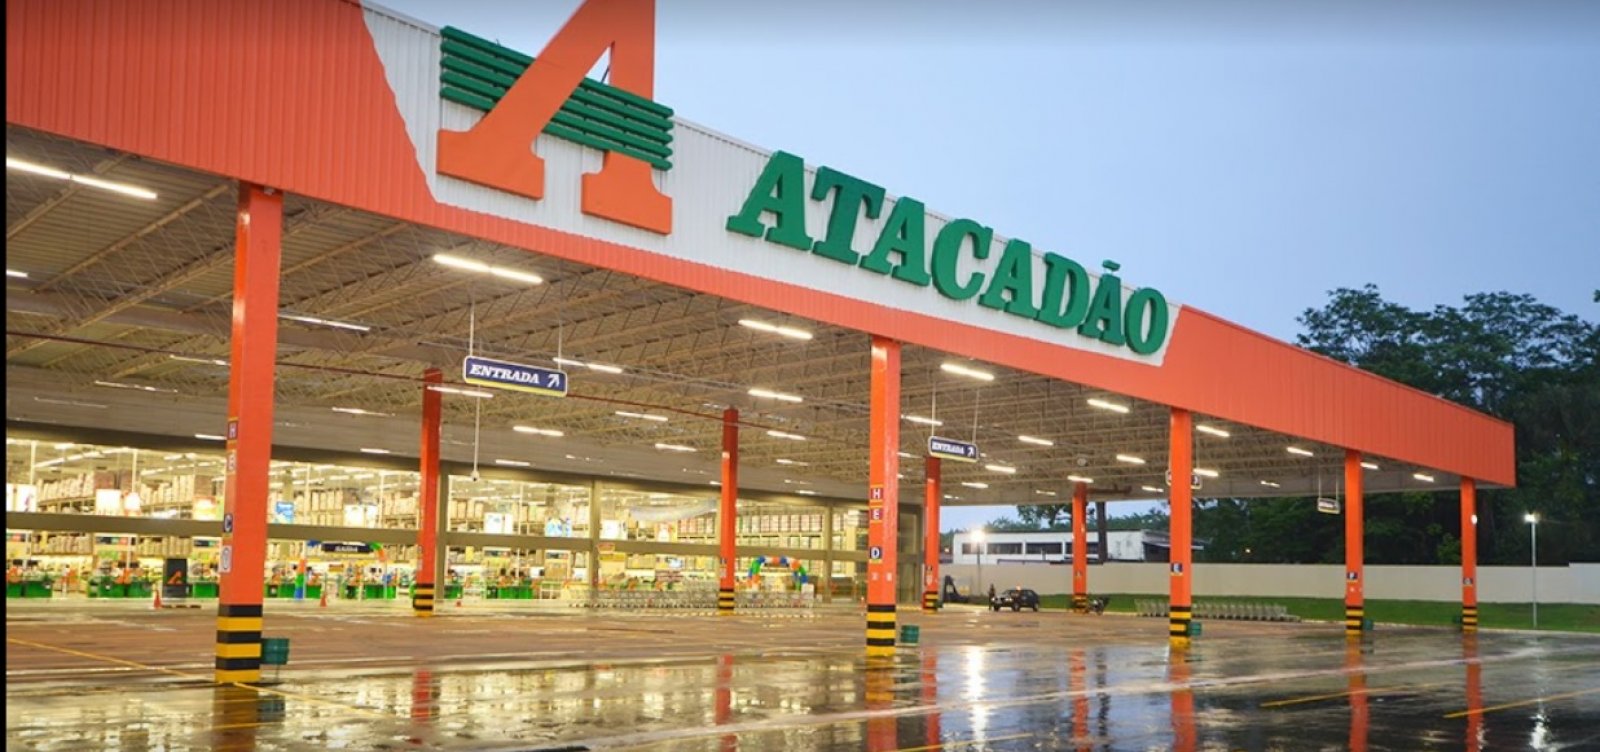 Caso de racismo aconteceu no supermercado Atacadão, administrado pelo Carrefour. Foto: Reprodução